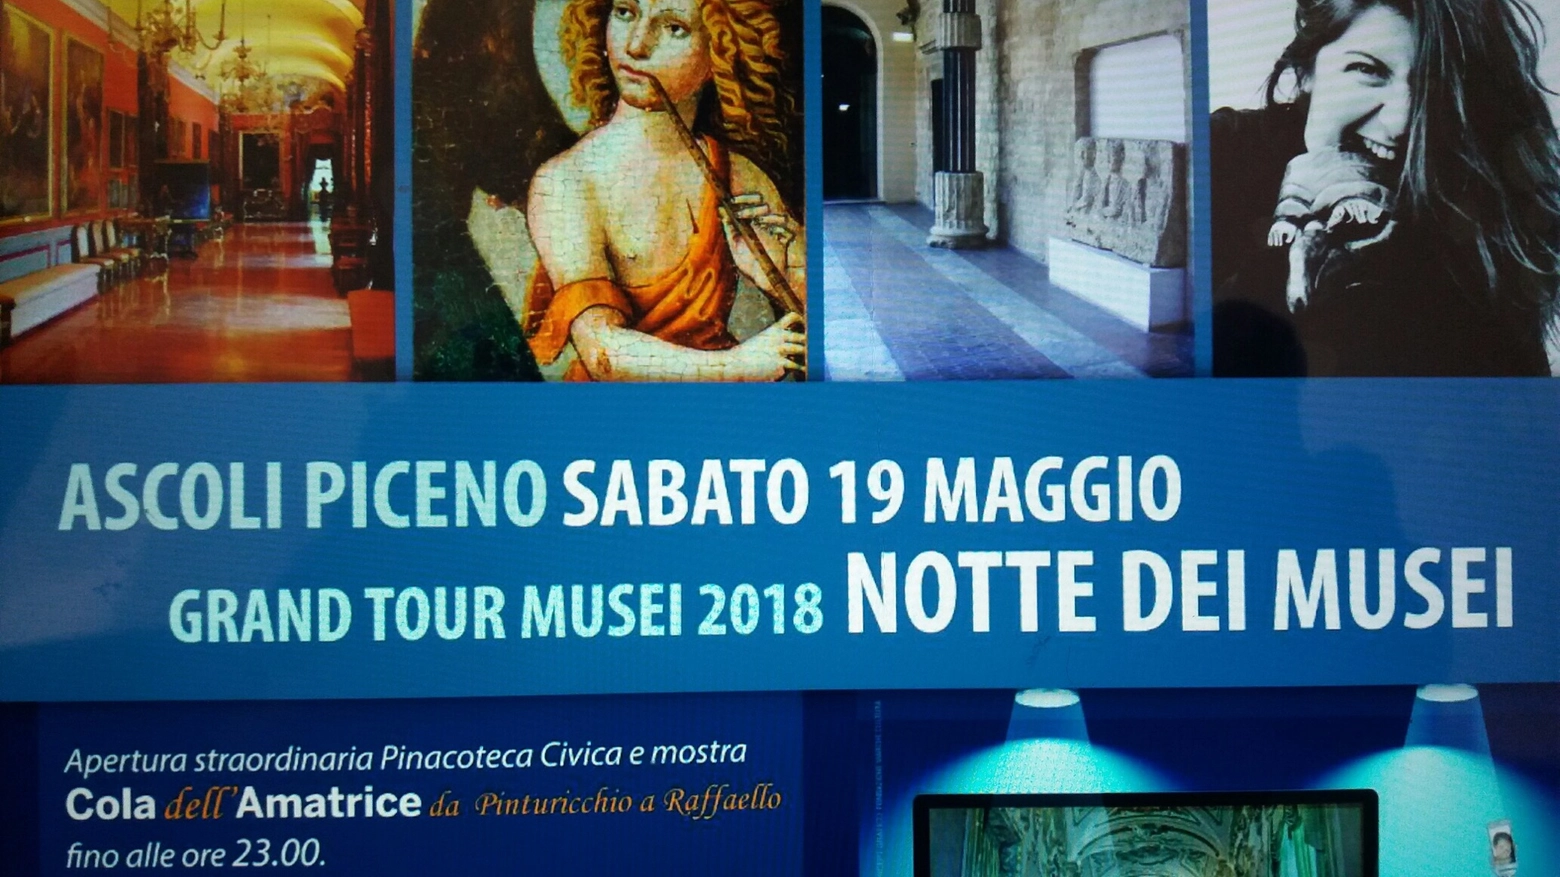 "Notte dei musei" ad Ascoli